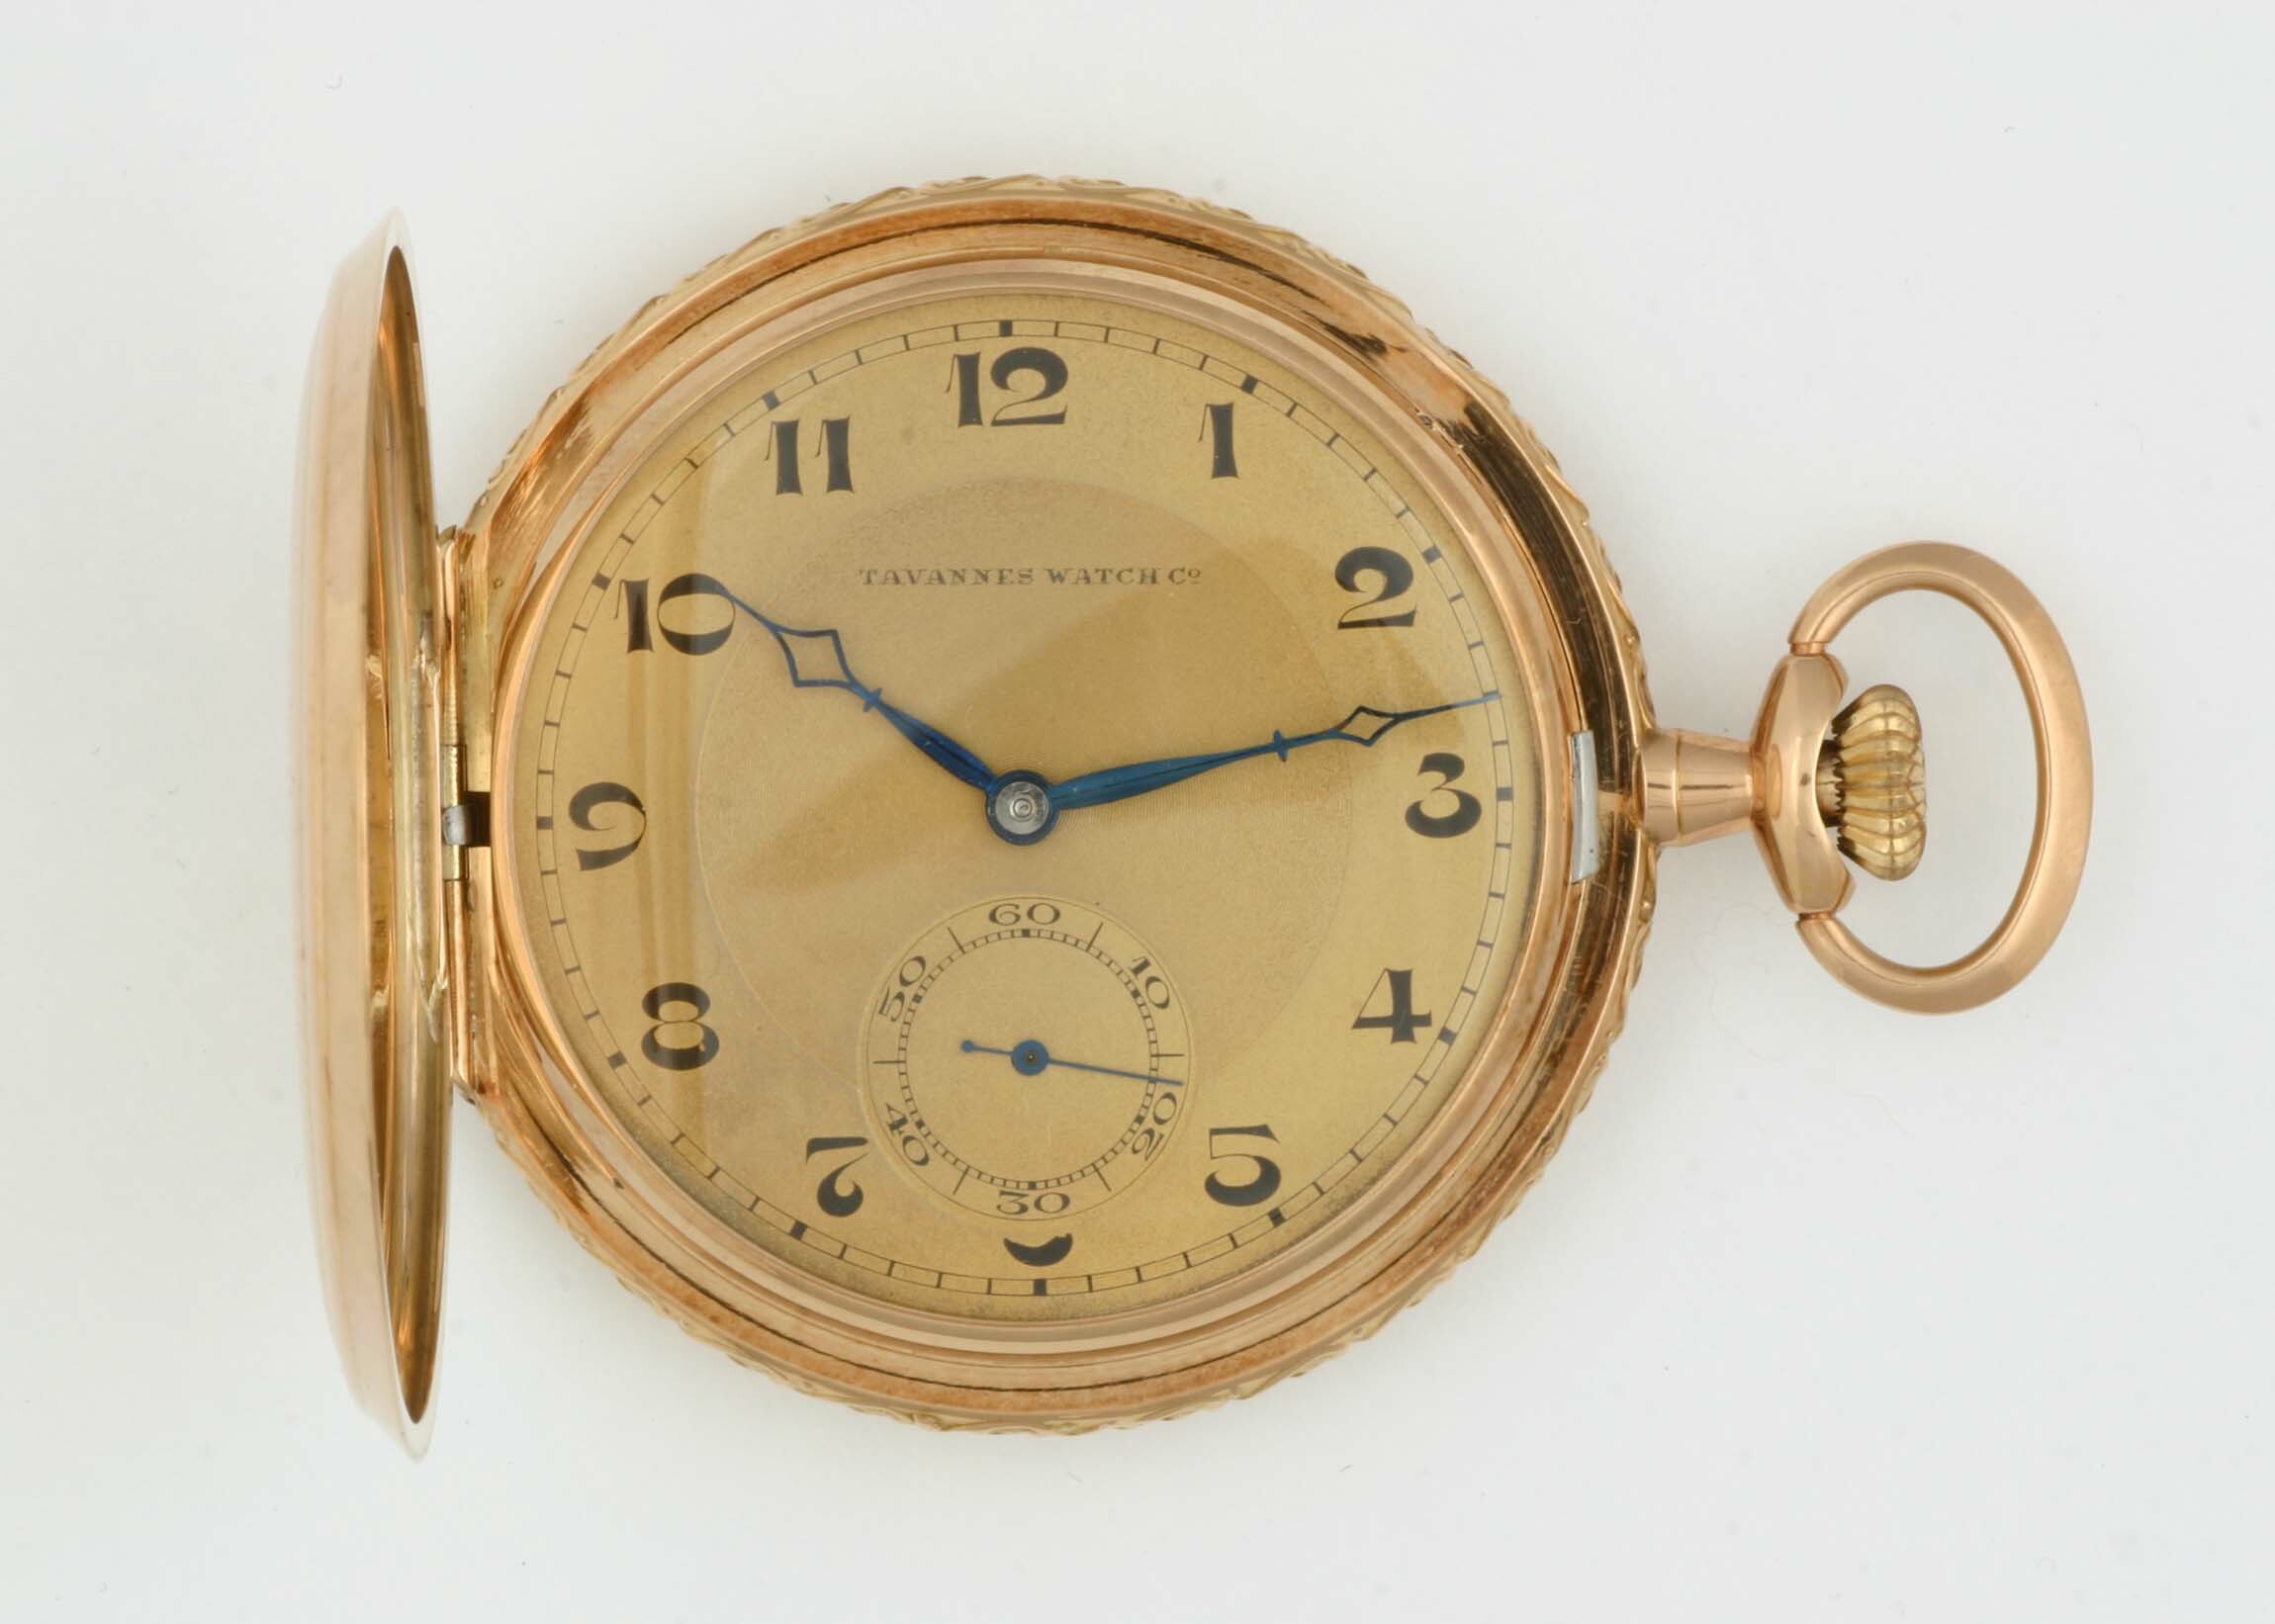 Taschenuhr, Tavannes Watch Co., Tavannes, um 1920 (Deutsches Uhrenmuseum CC BY-SA)